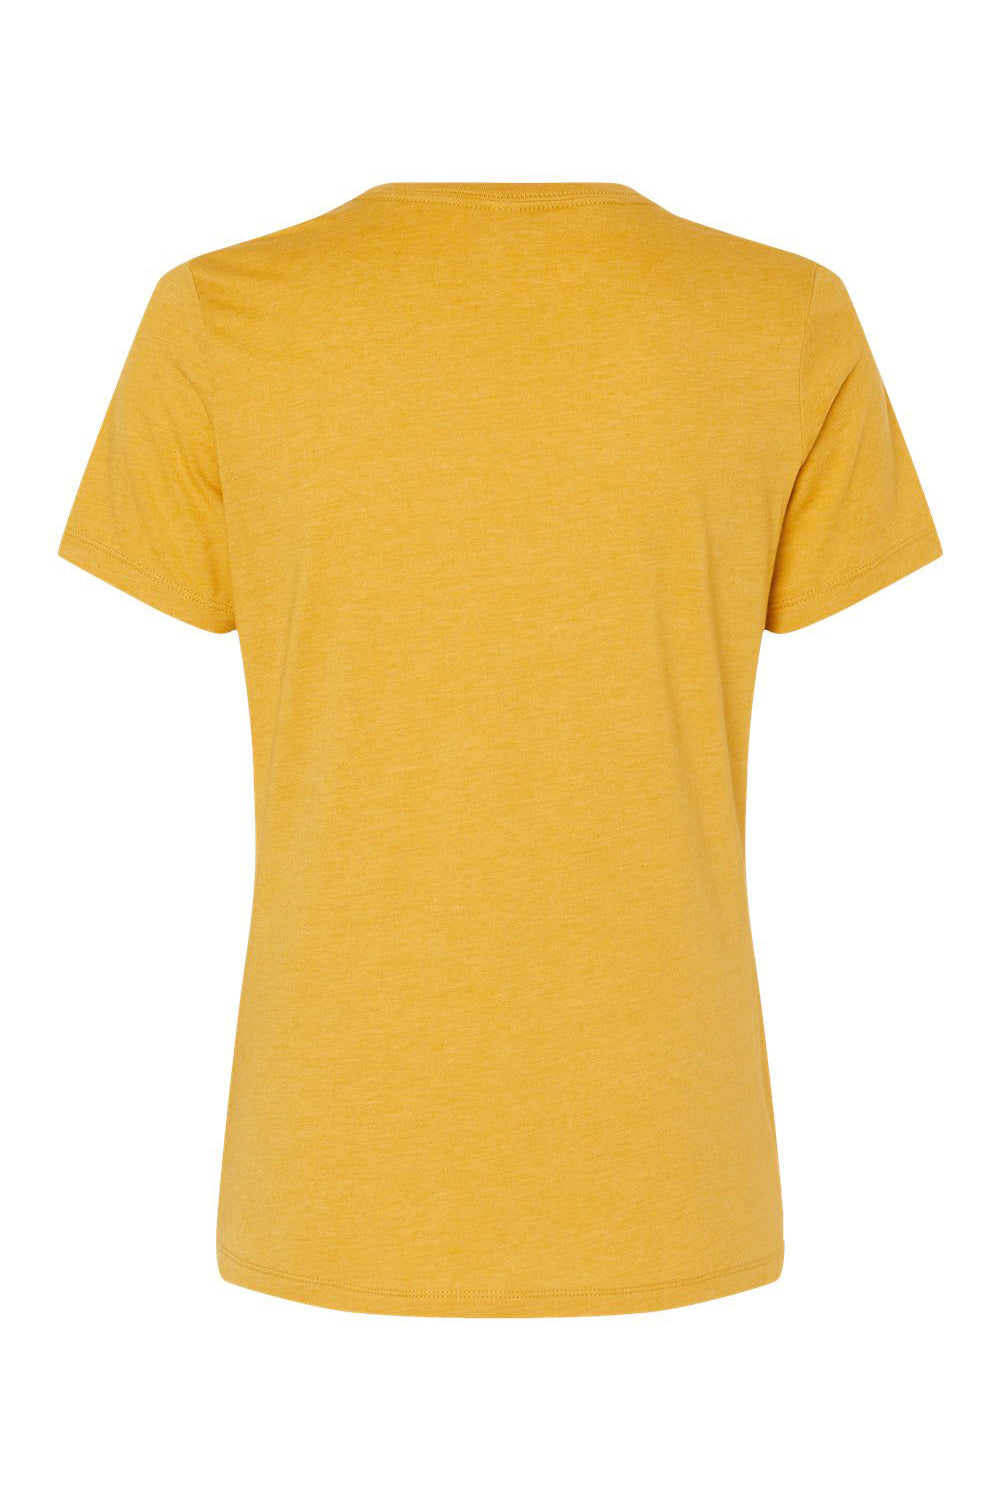 Bella + Canvas BC6400CVC/6400CVC Womens CVC Short Sleeve Crewneck T-Shirt Heather Mustard Yellow Flat Back